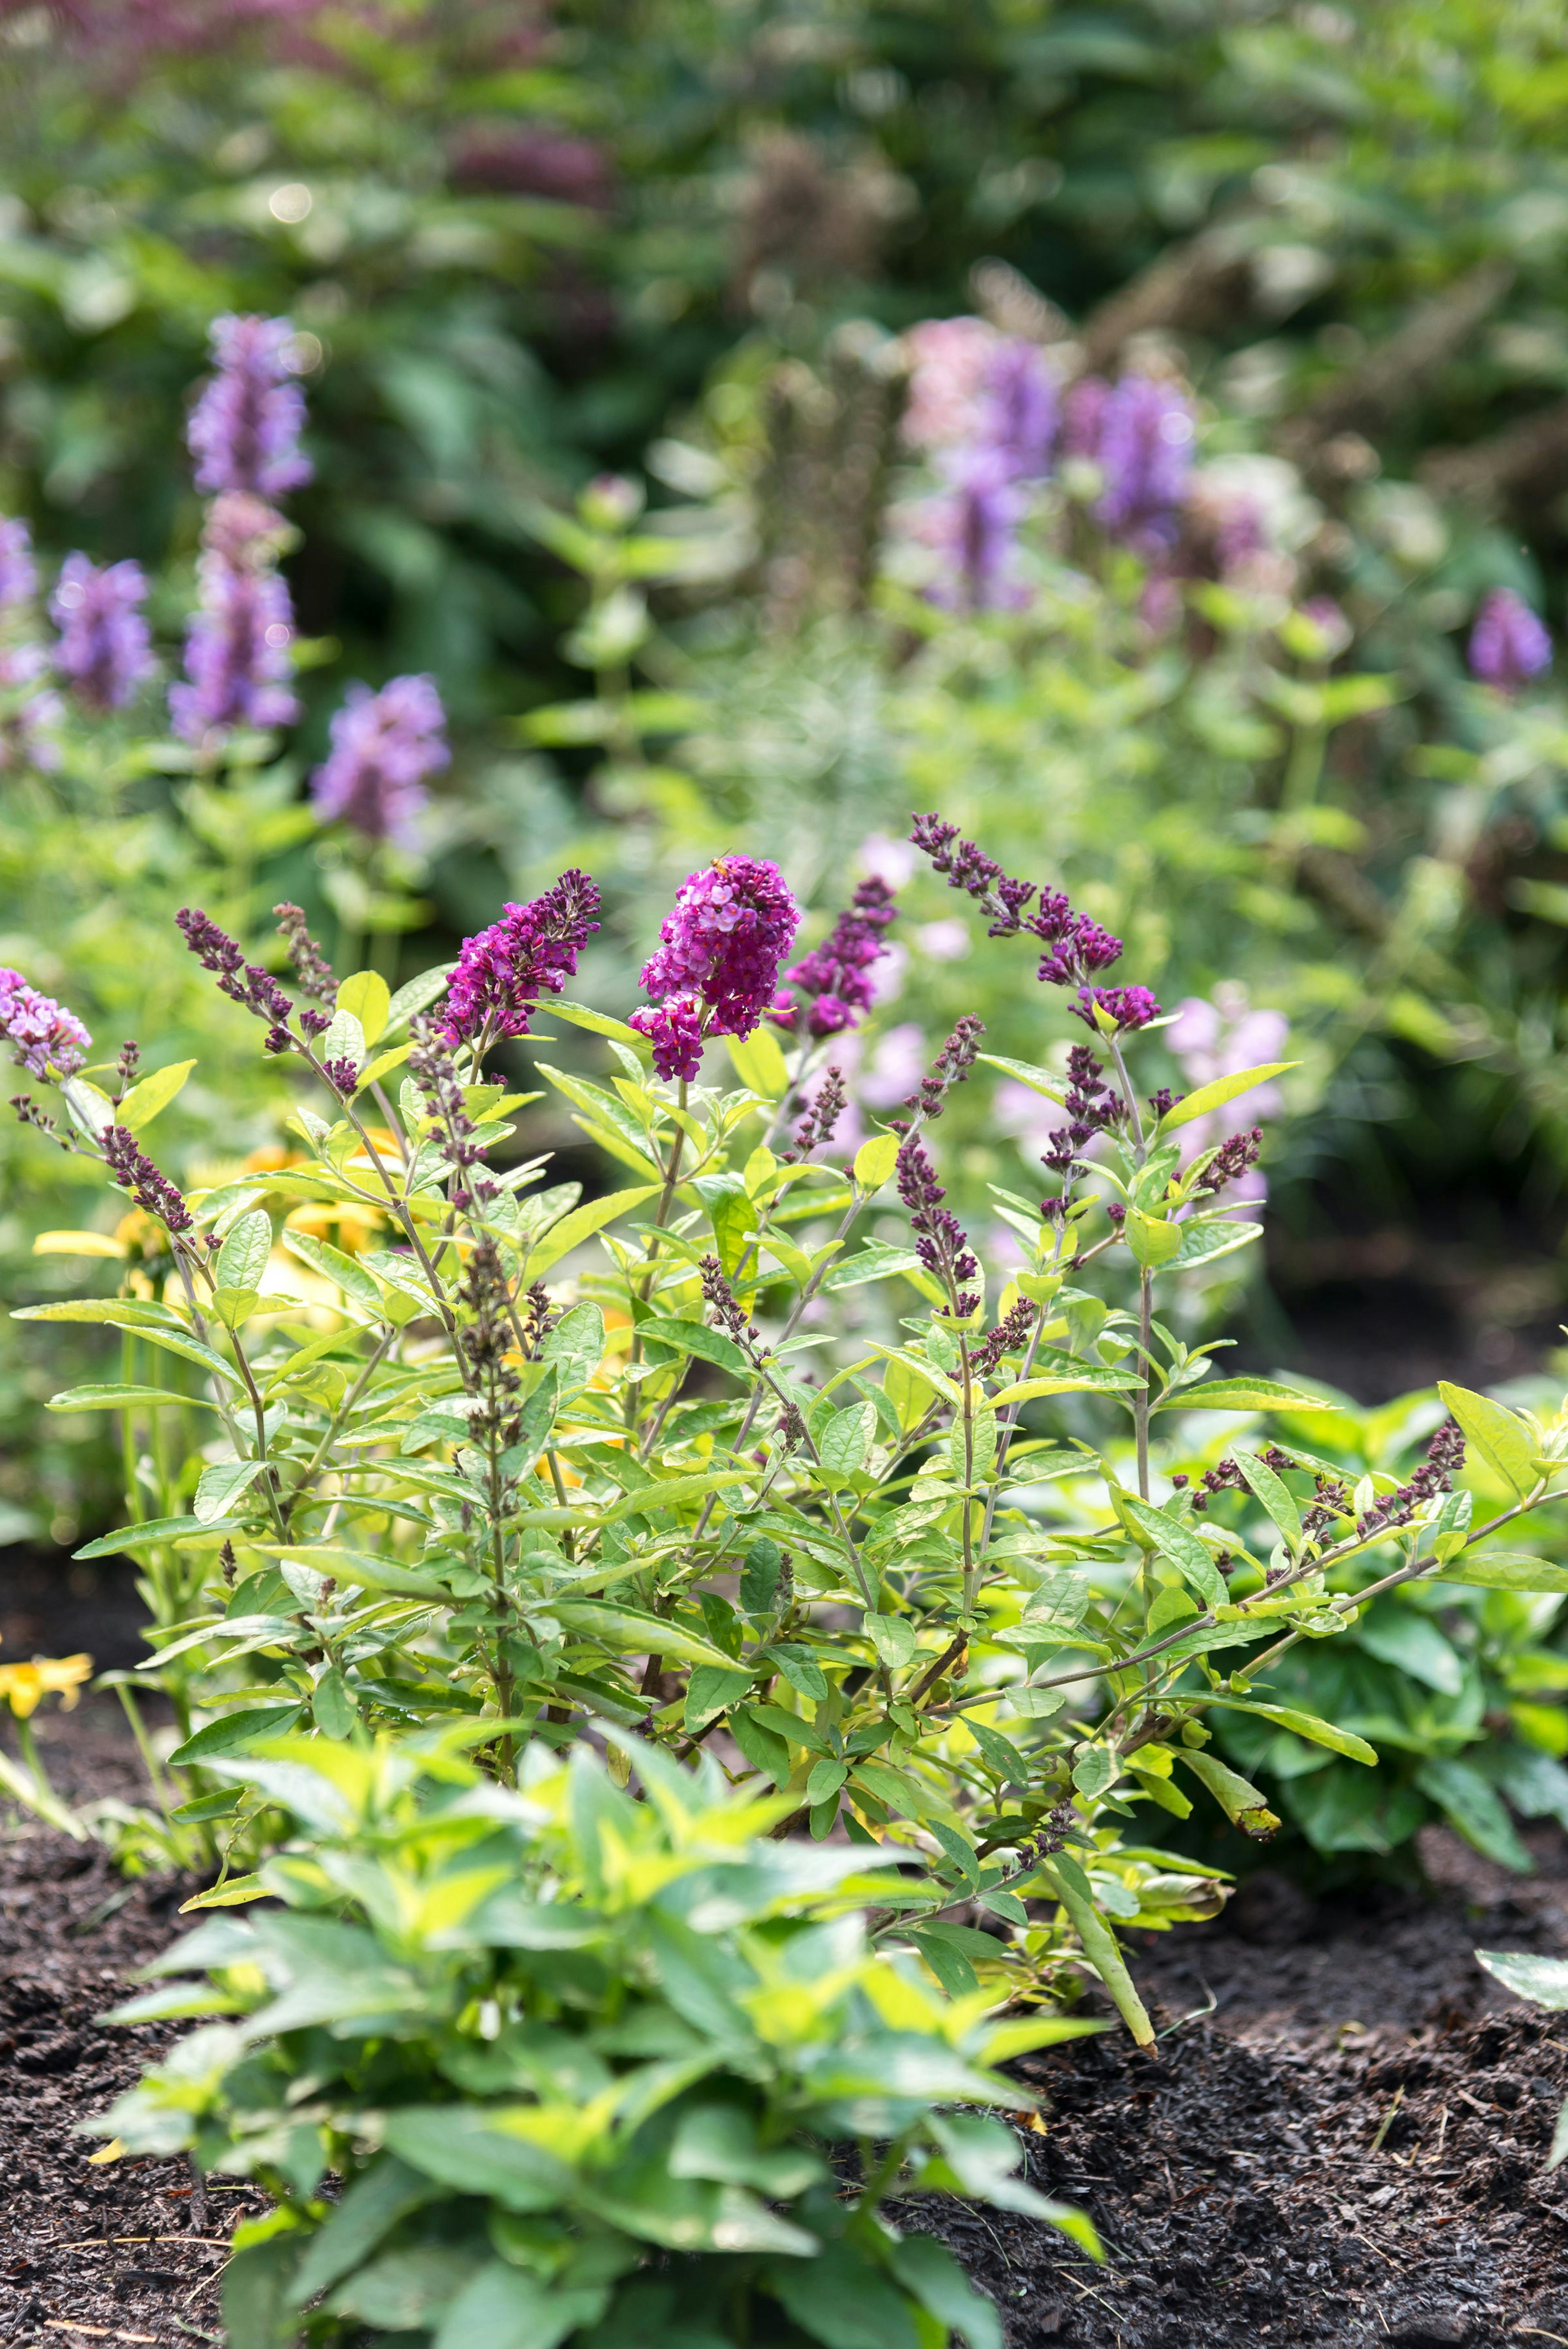 Purple flowers in a garden 